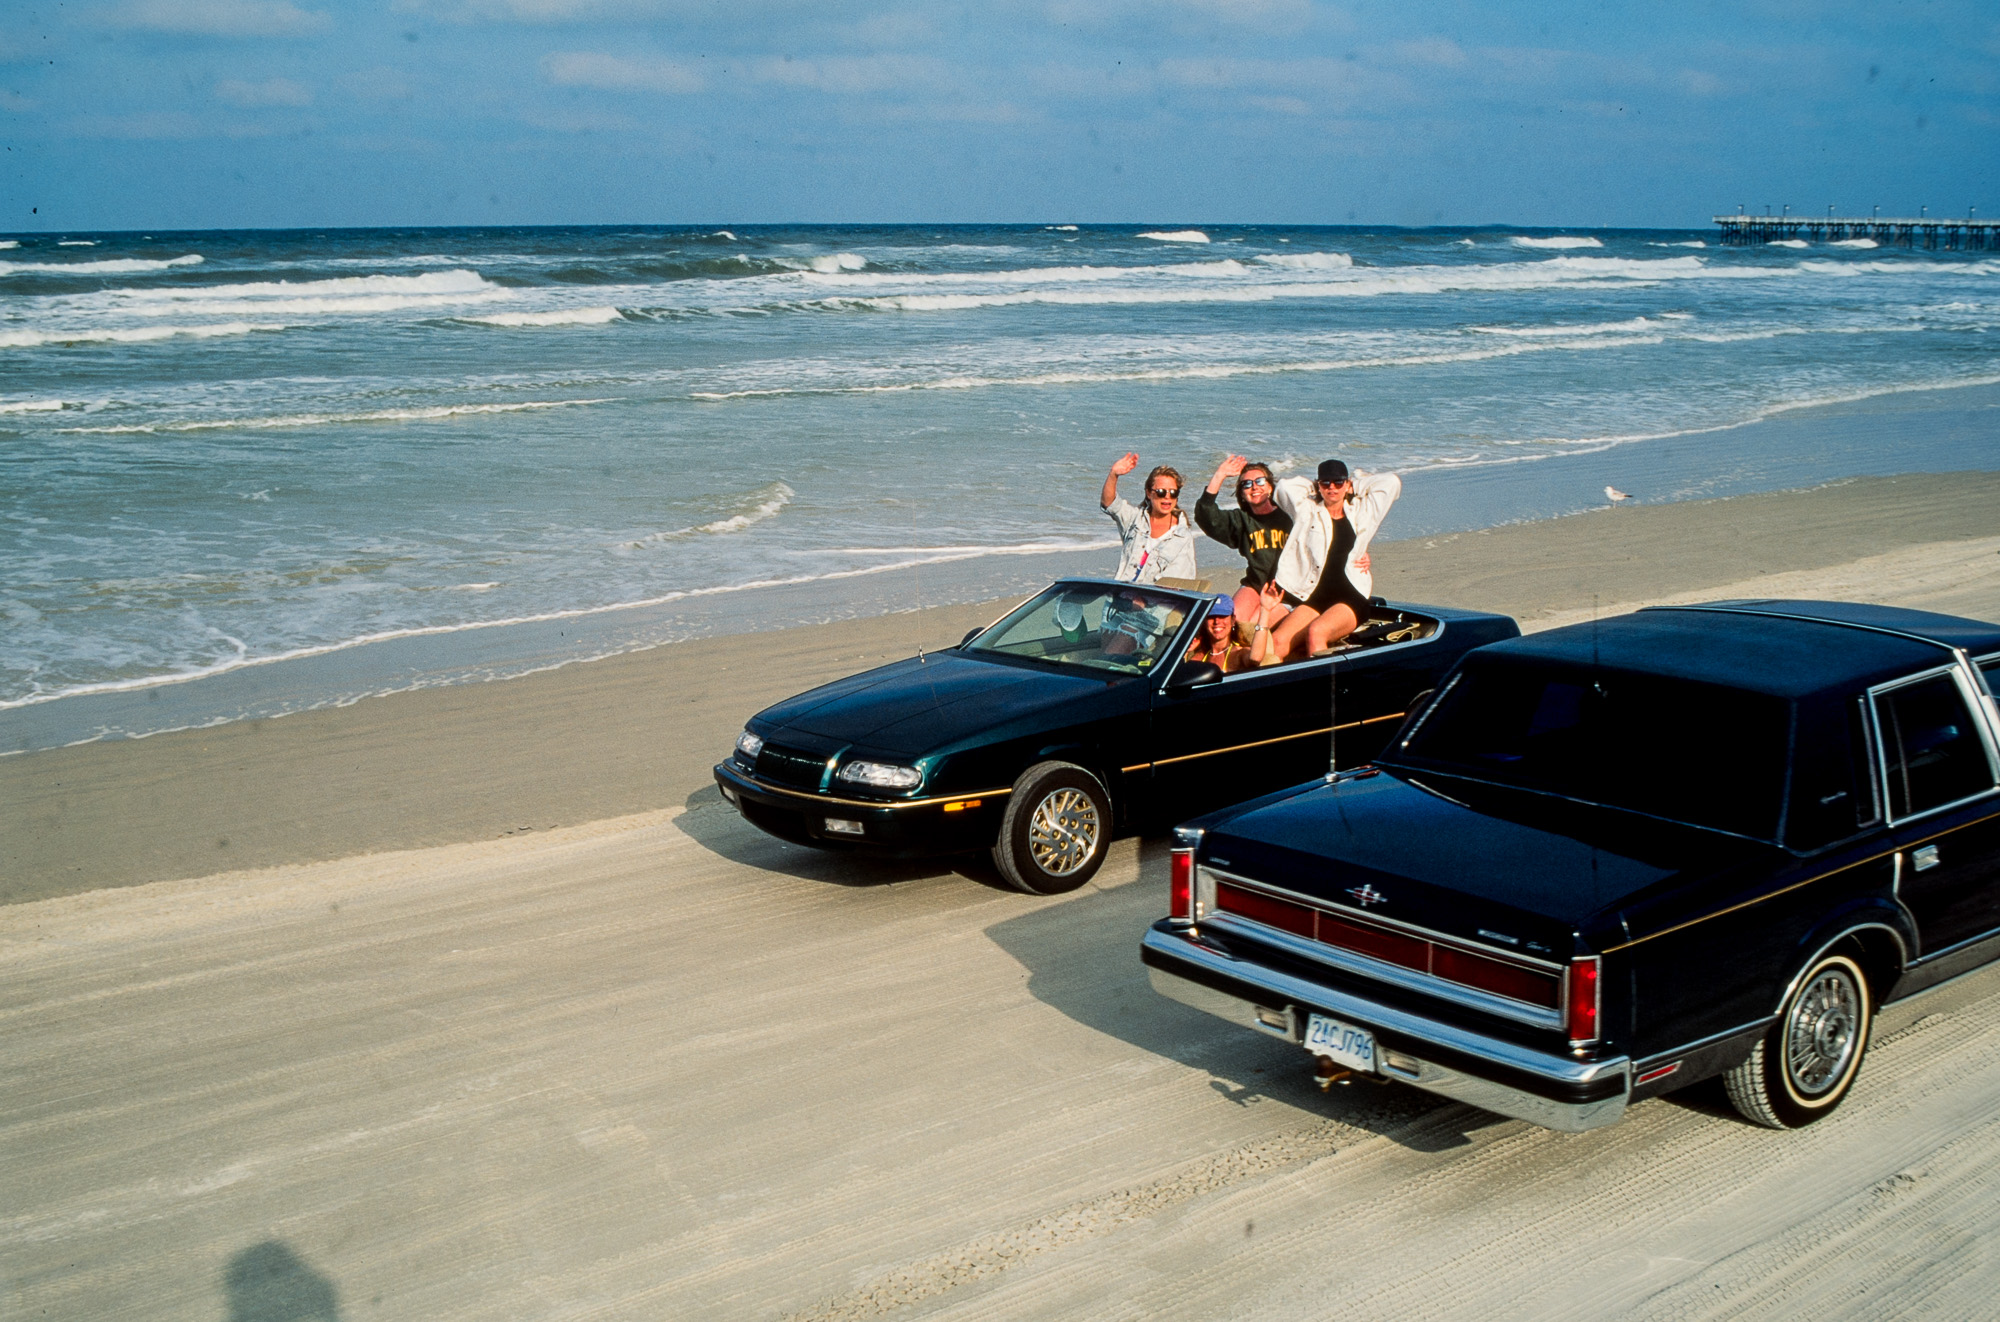 Au moment du "Spring break" les jeunes floridiens s'en donnent à cœur joie. Les véhicules les p^lus anachroniques ont le droit de circuler sur l'immense  plage de Daytona.